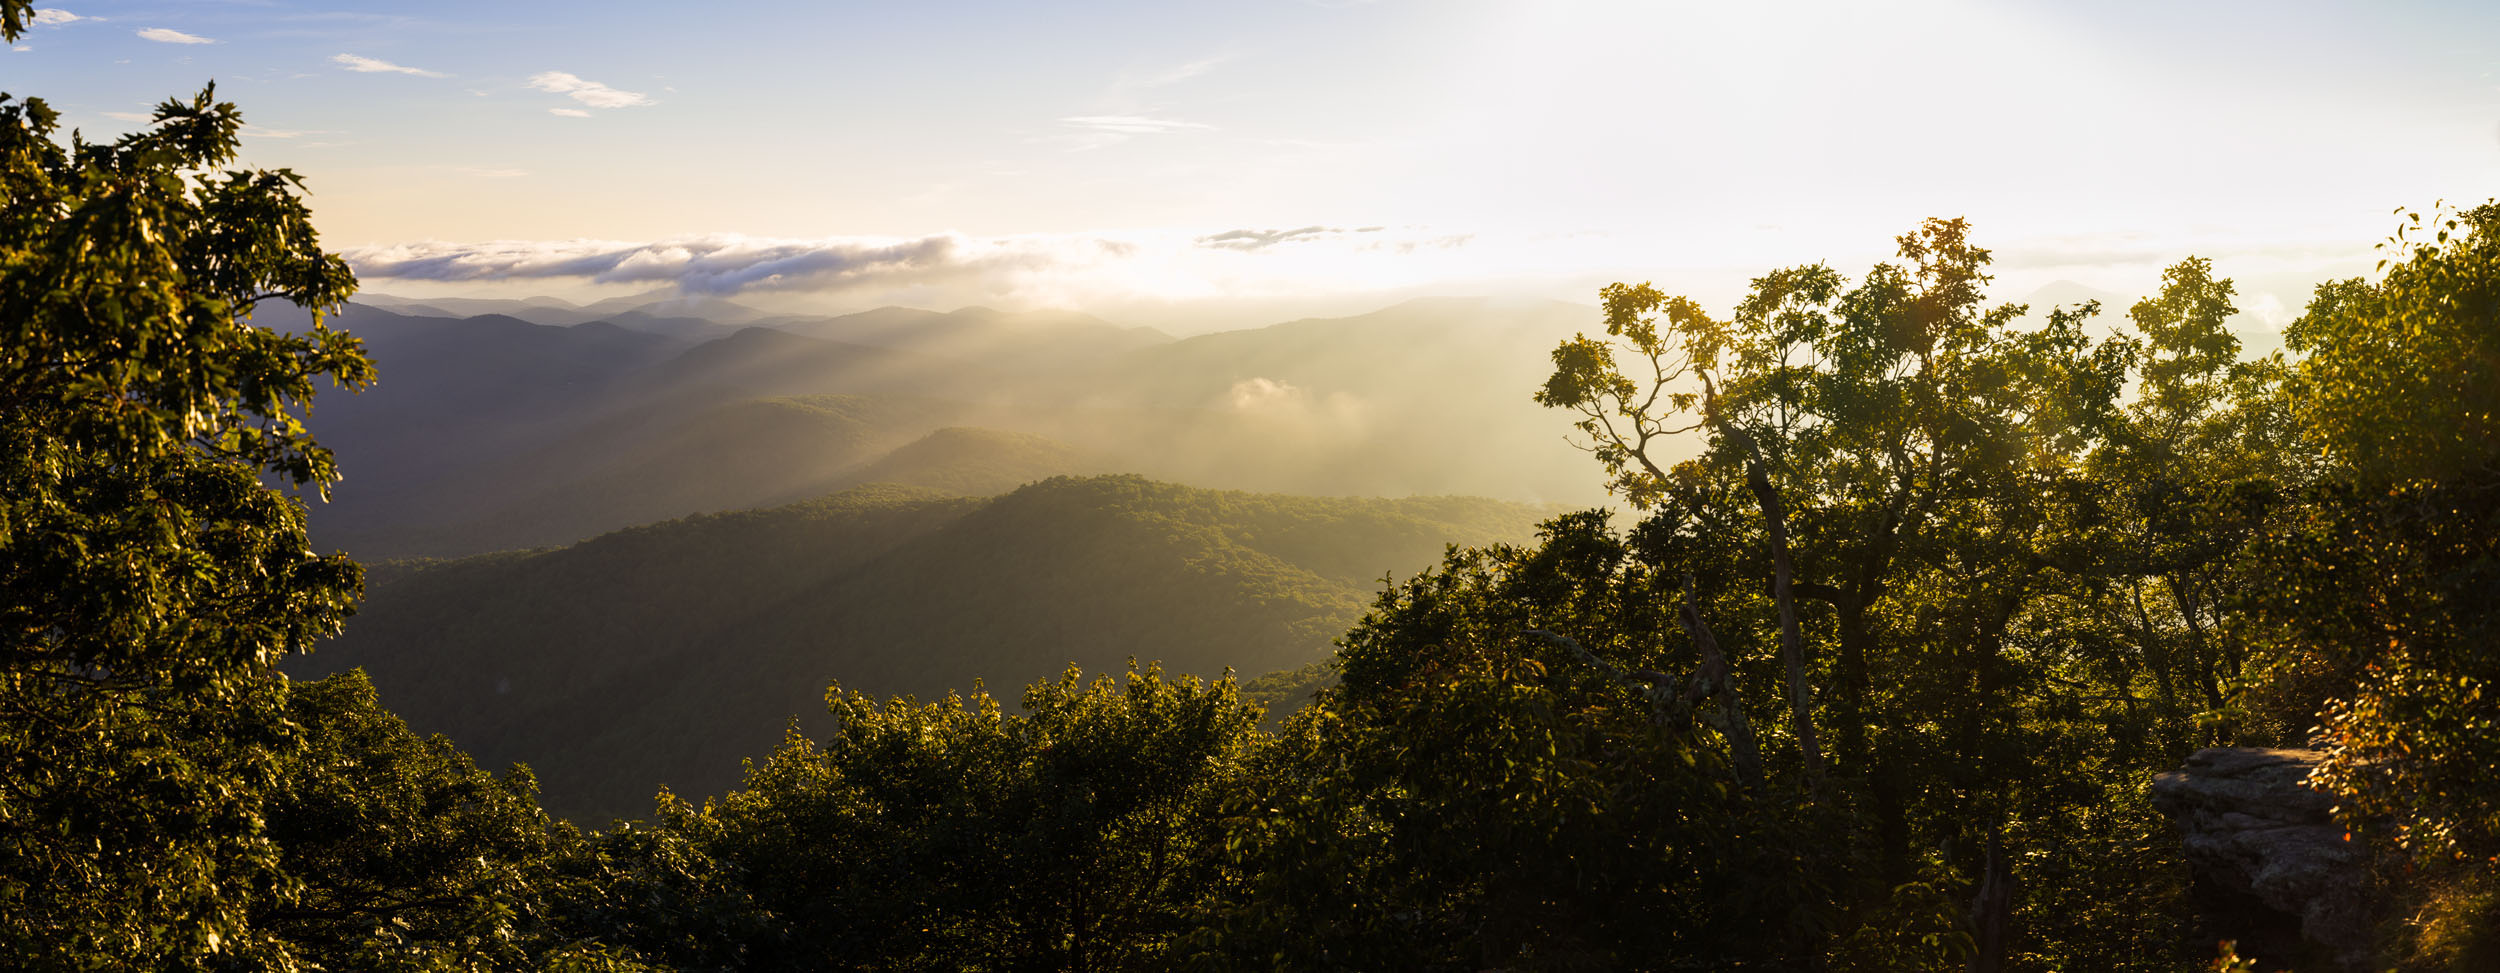 Sunrise over the Appalachian Mountains of Georgia